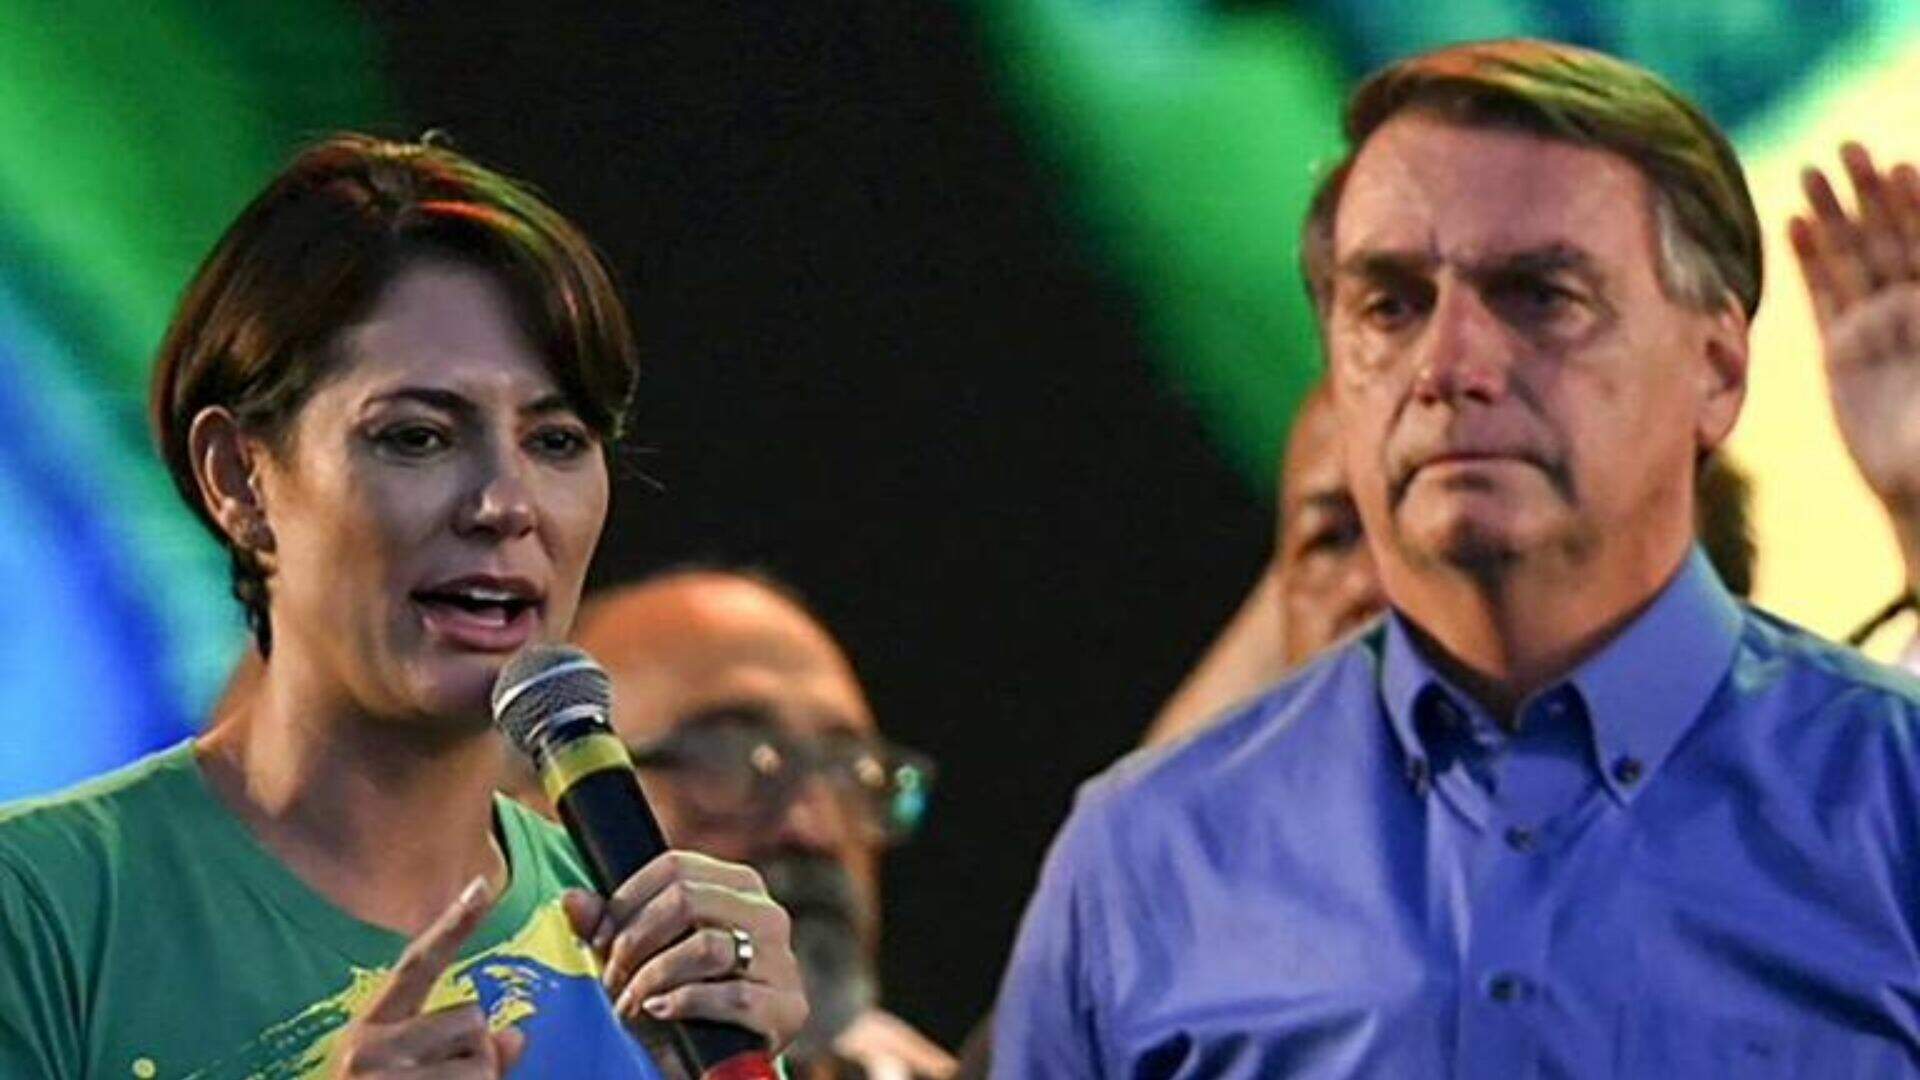 Crise no casamento? Jair Bolsonaro dá unfollow em Michelle após derrota nas urnas - Metropolitana FM